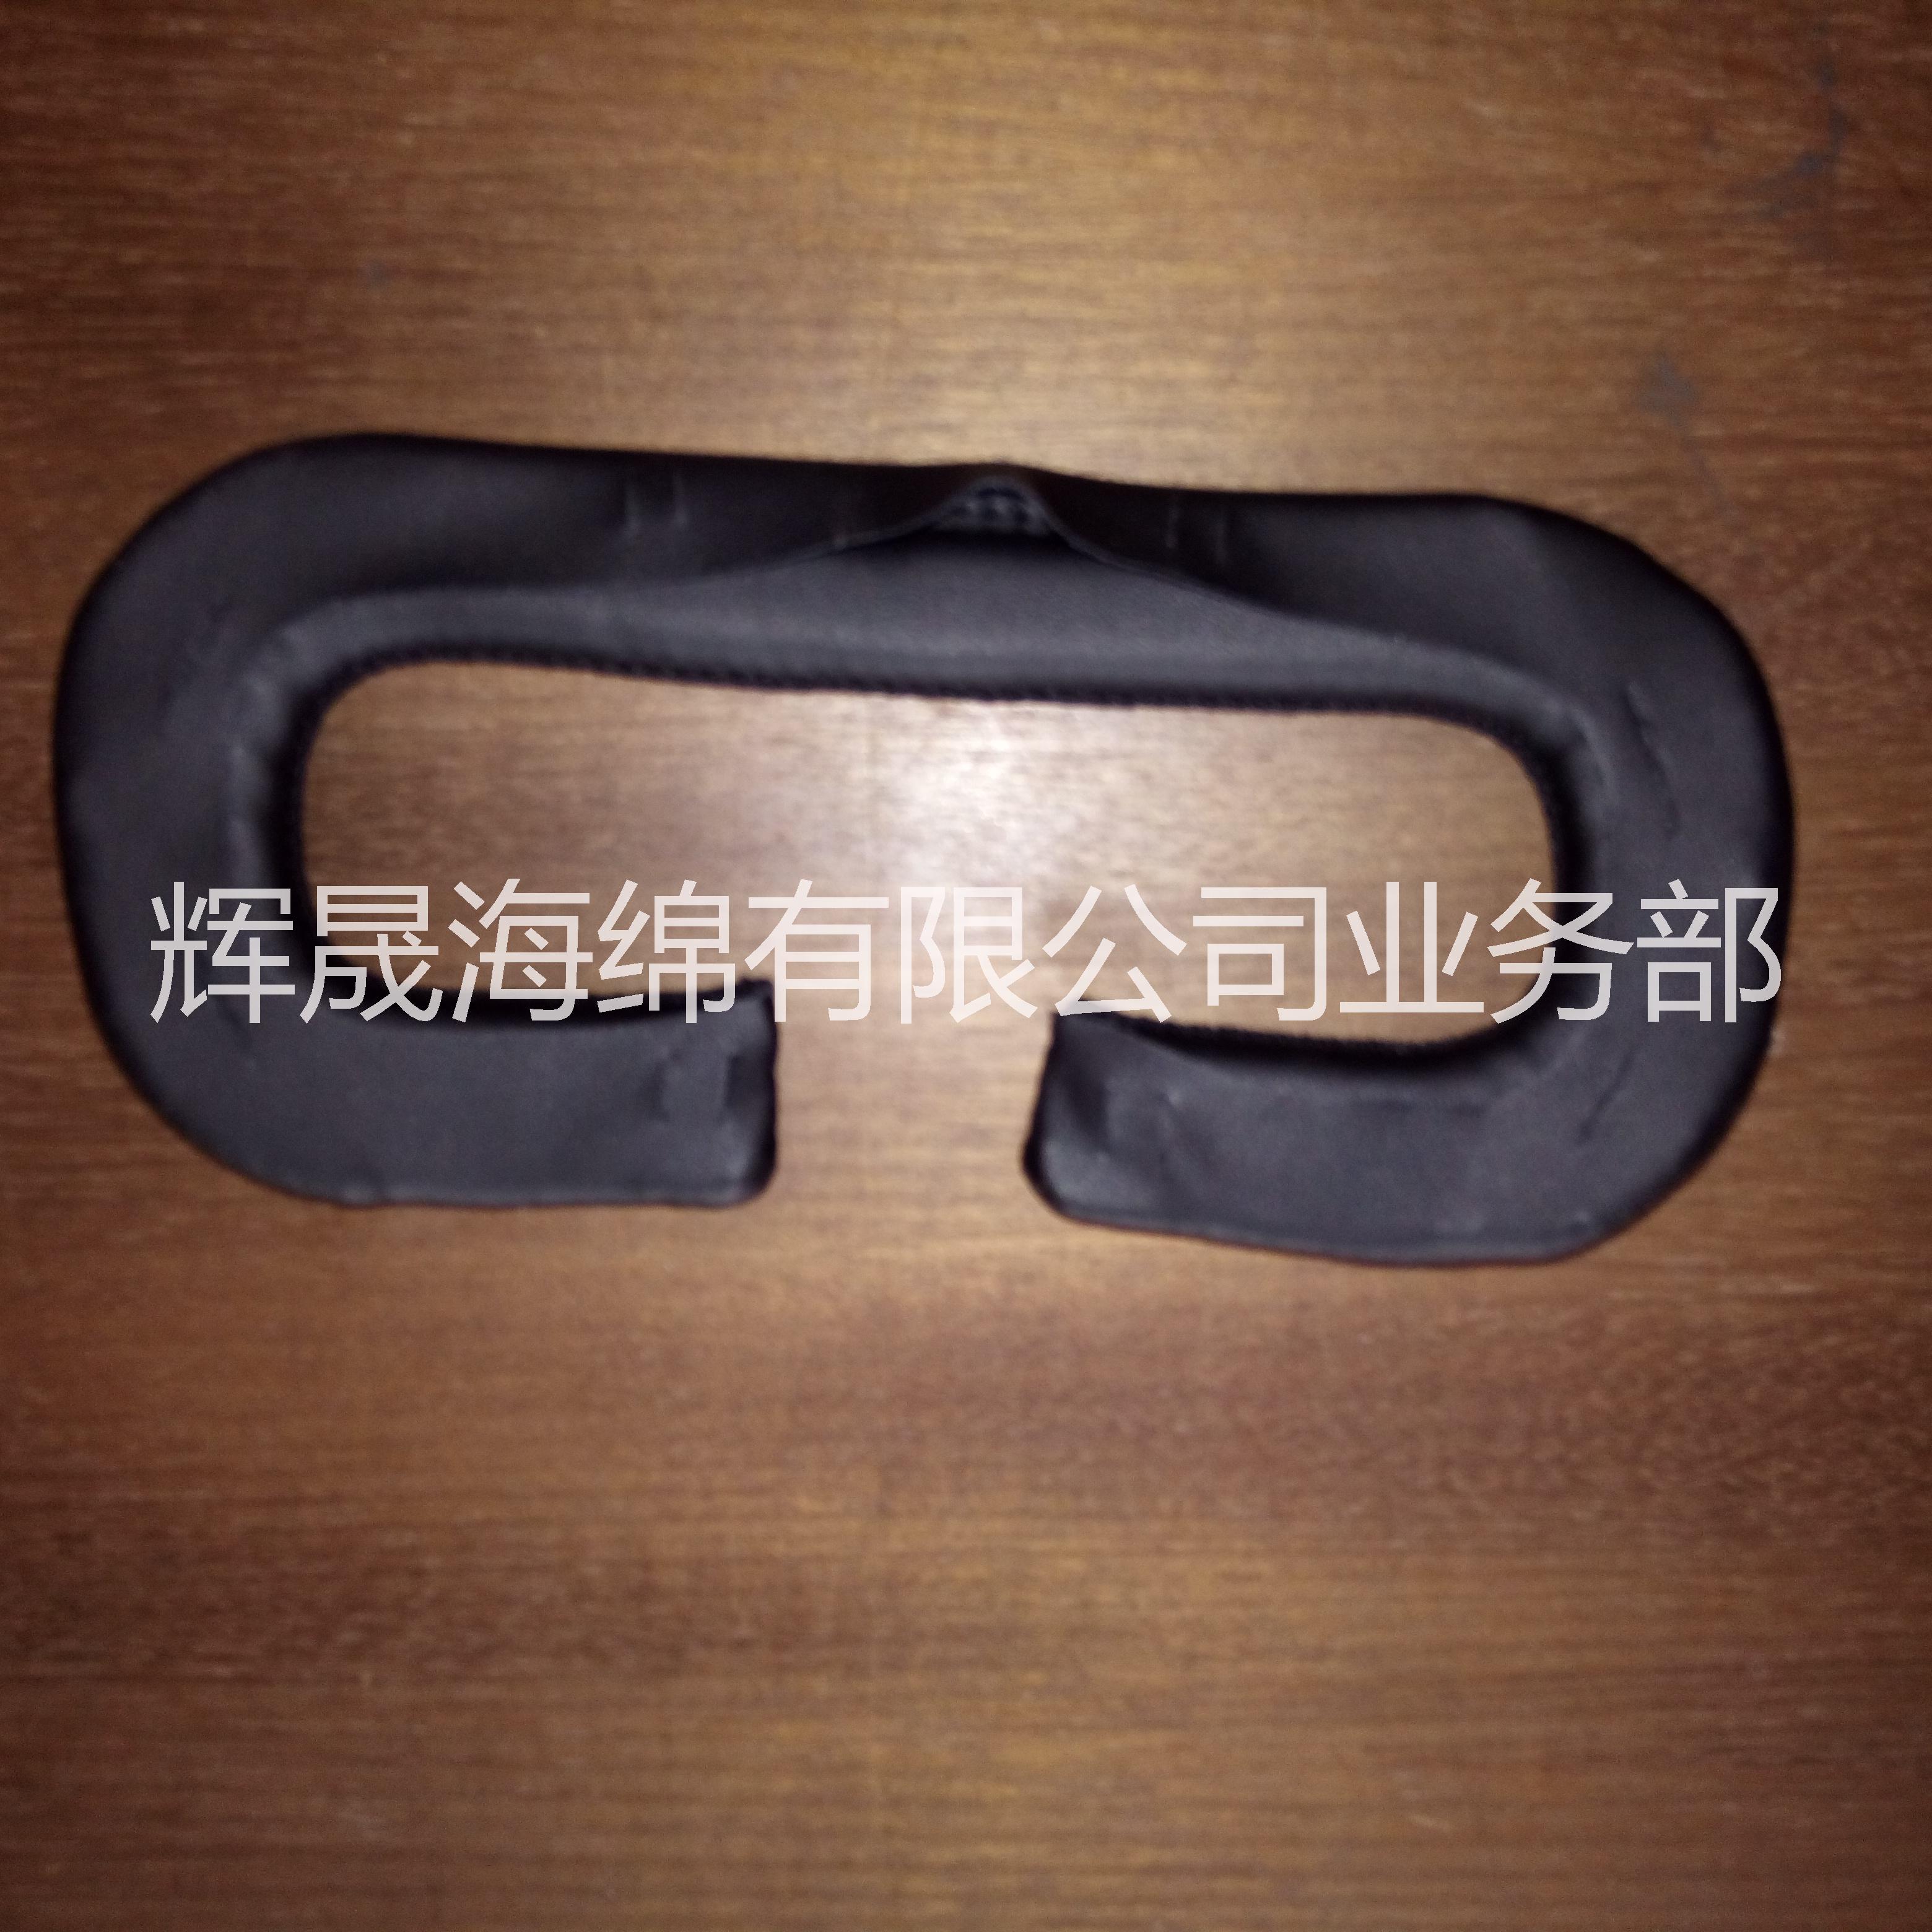 东莞辉晟低价出售各种VR3D眼罩